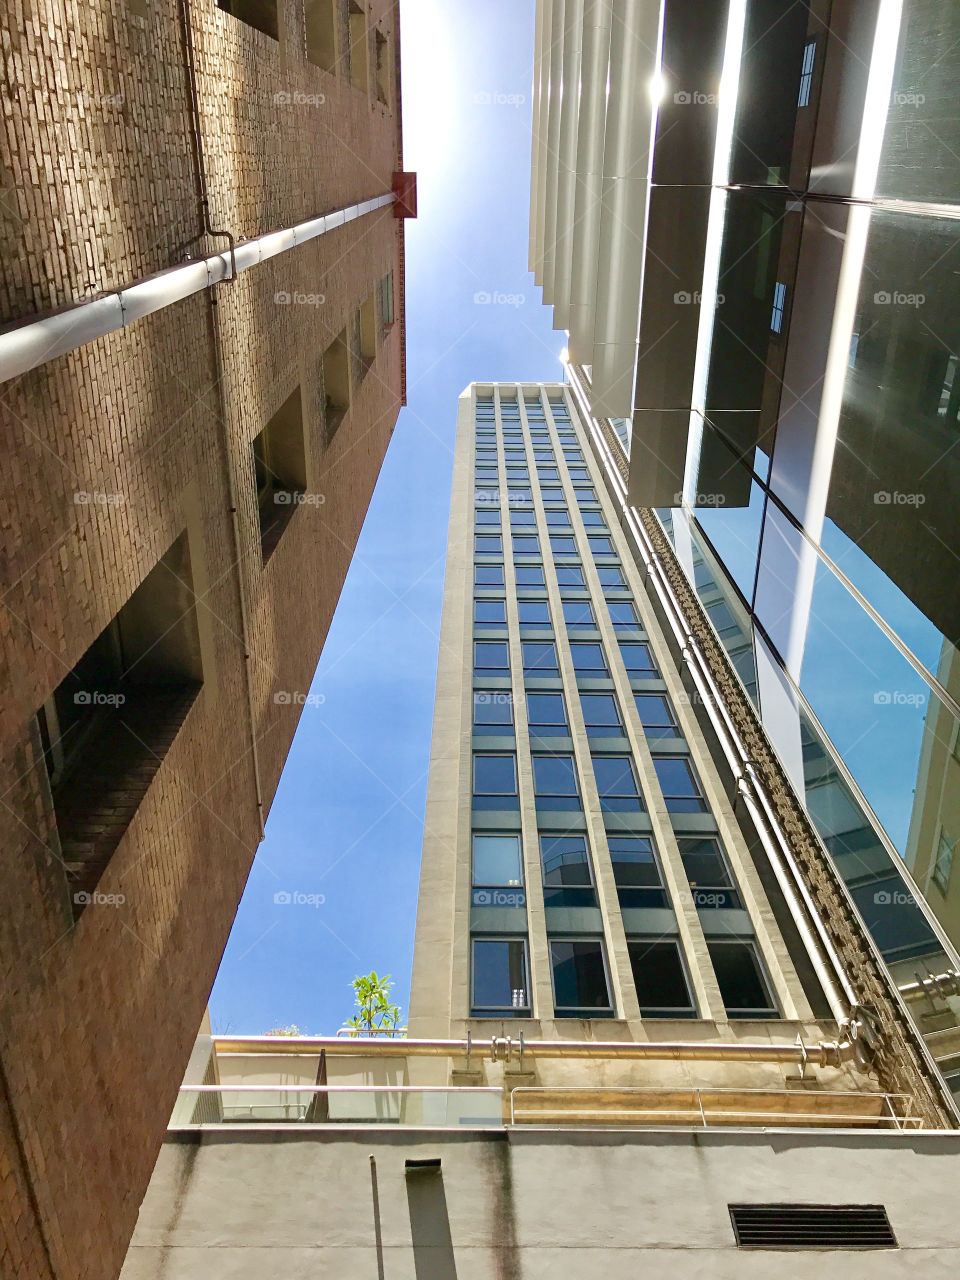 Building views in Brisbane 